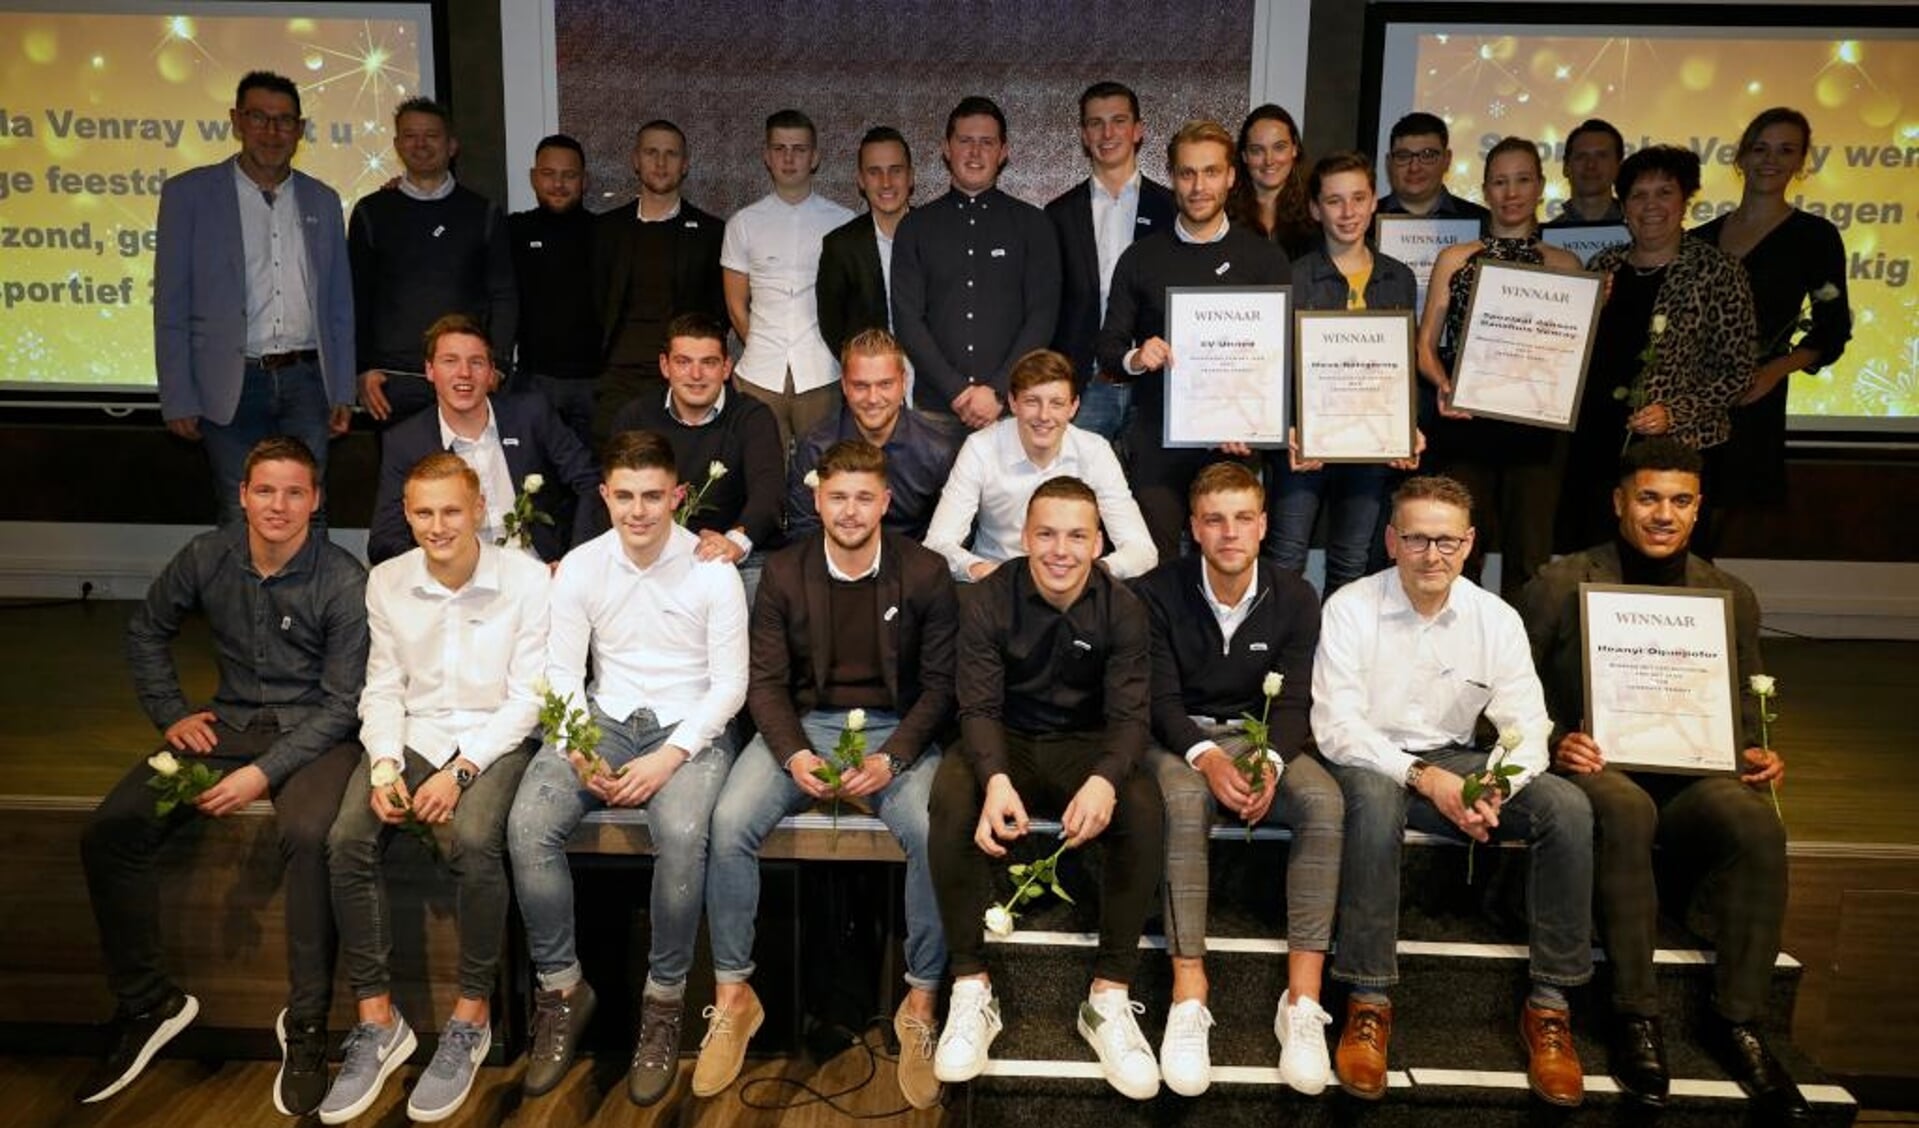 De winnaars op de foto tijdens de Sportgala Venray-editie in december 2019. 